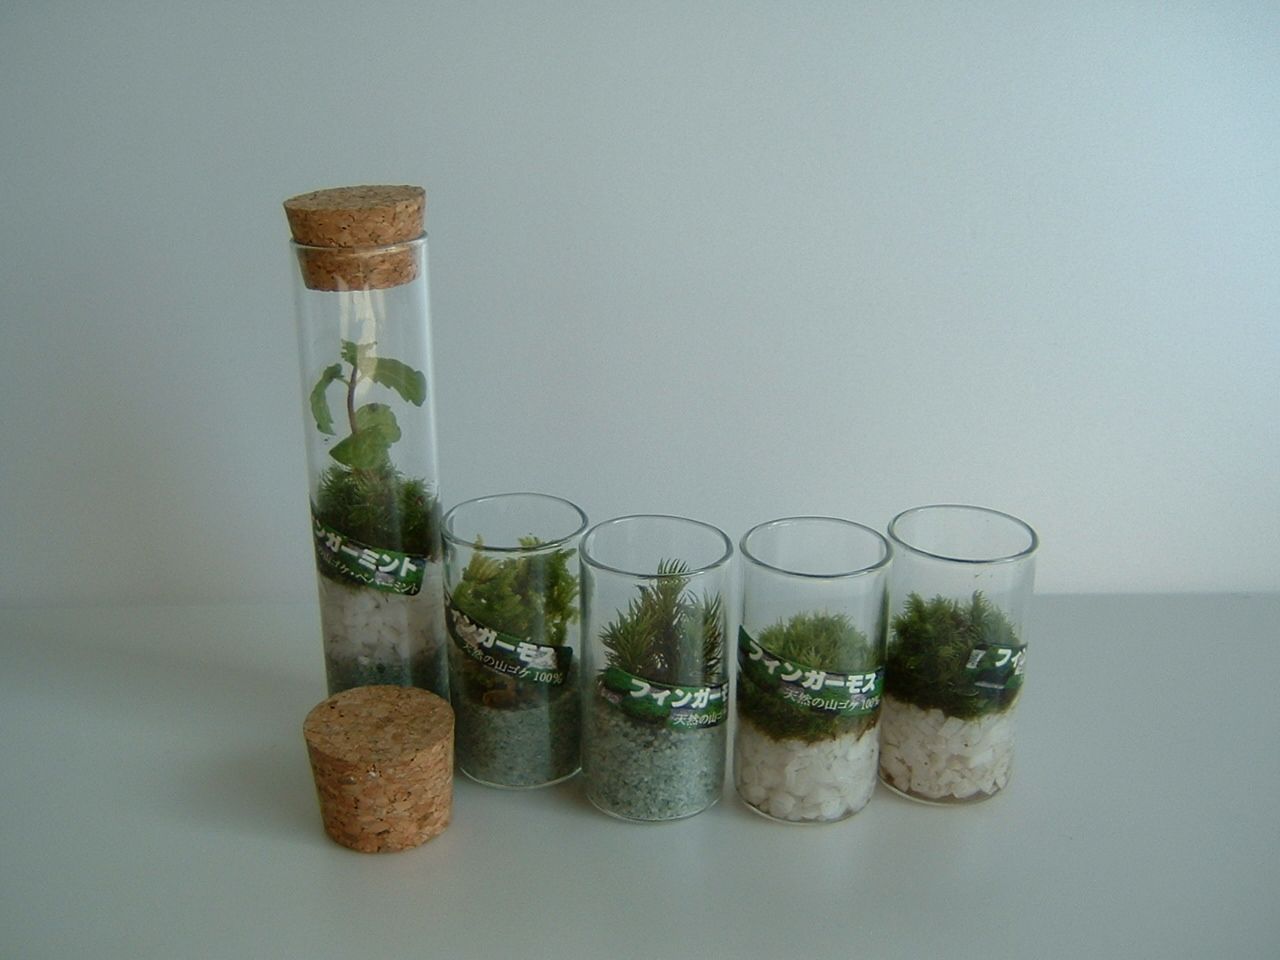 Japanese finger moss in glass tube